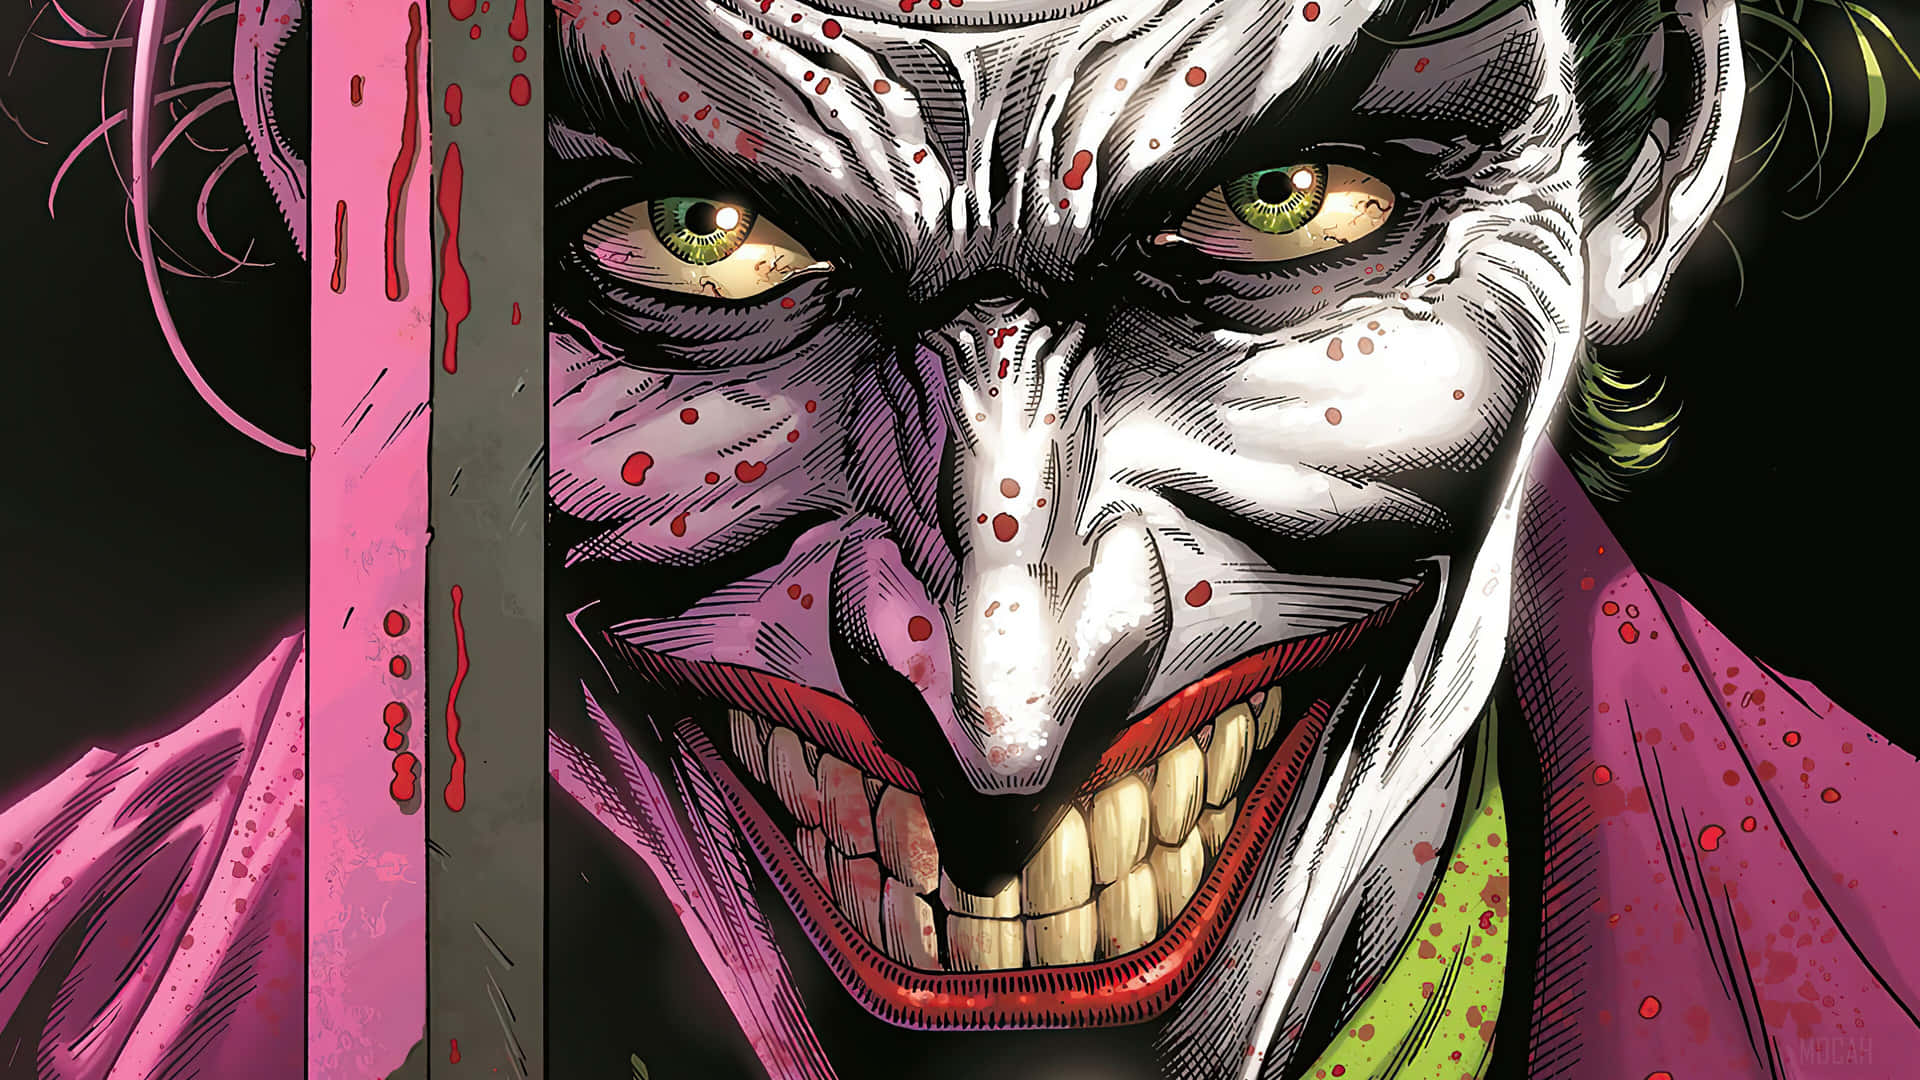 The Joker Knife Comic Art Wallpaper